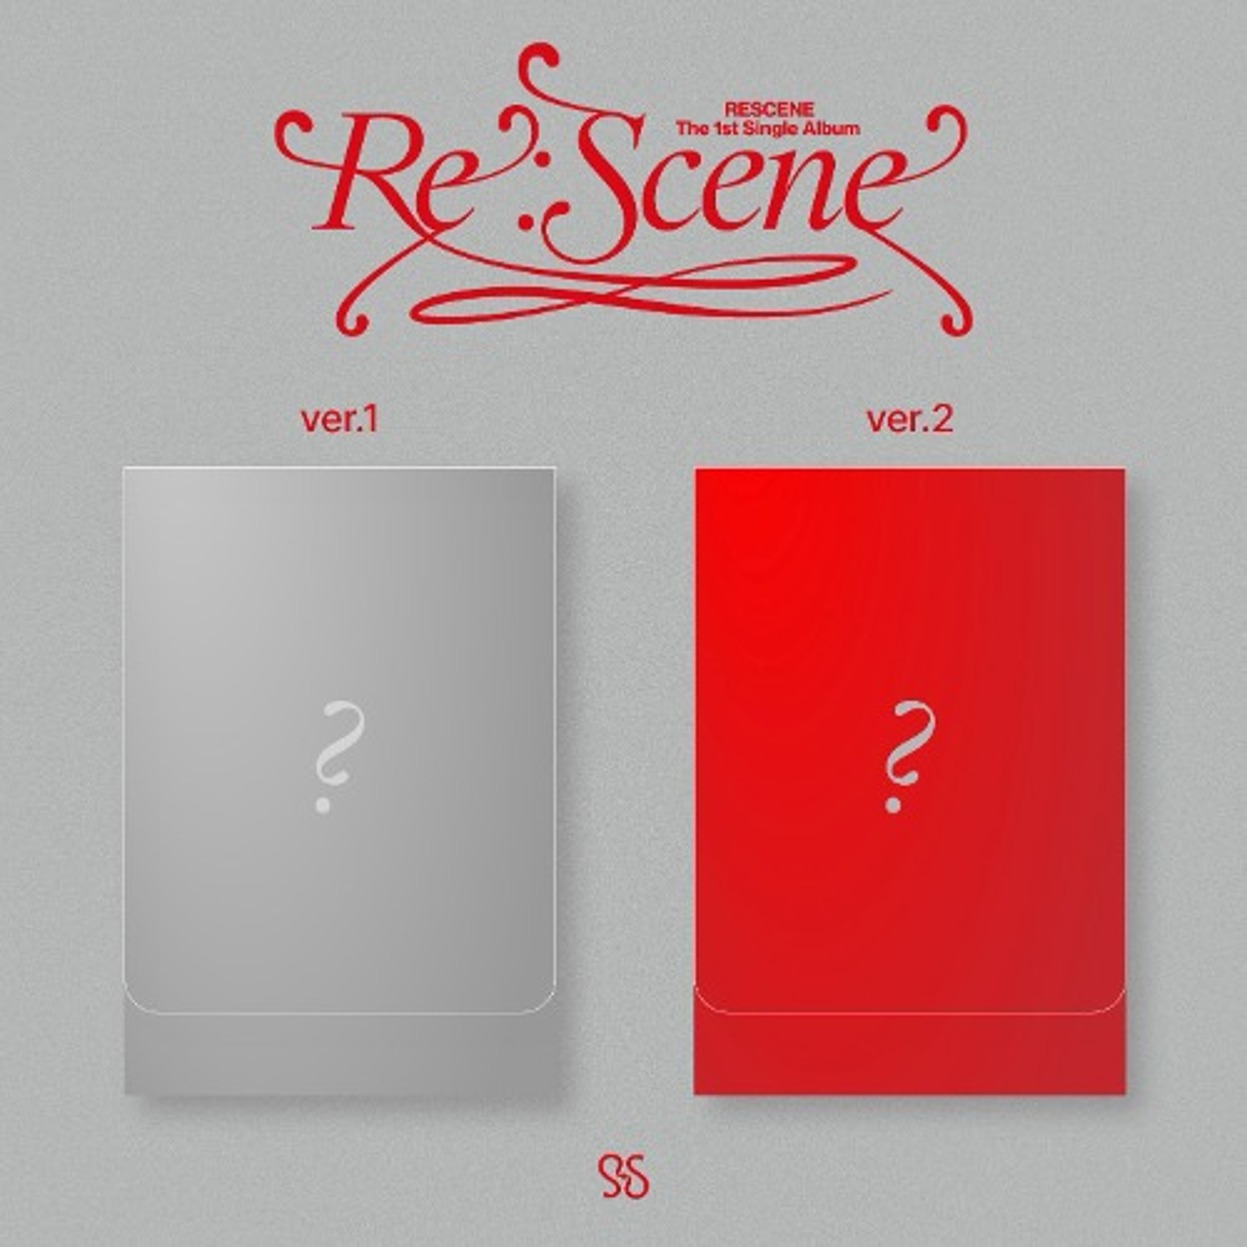 리센느 (RESCENE) - 싱글앨범 1집 [Re:scene] (PLVE)